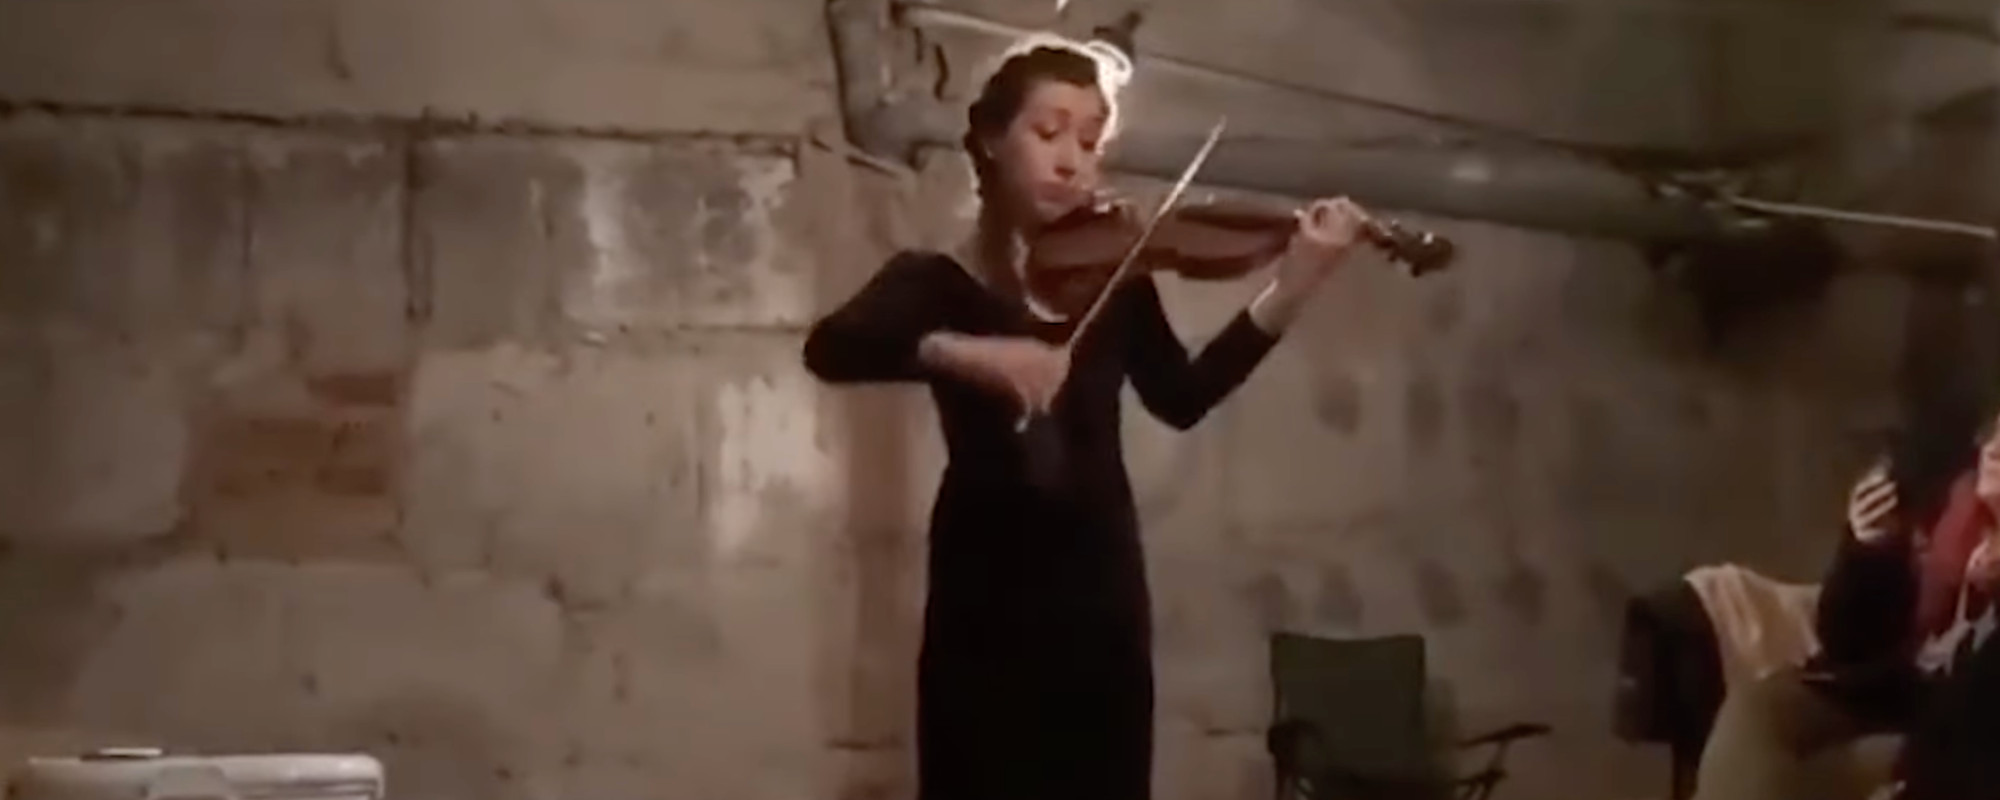 Impromptu Violin Concert in a Ukrainian Shelter Goes Viral